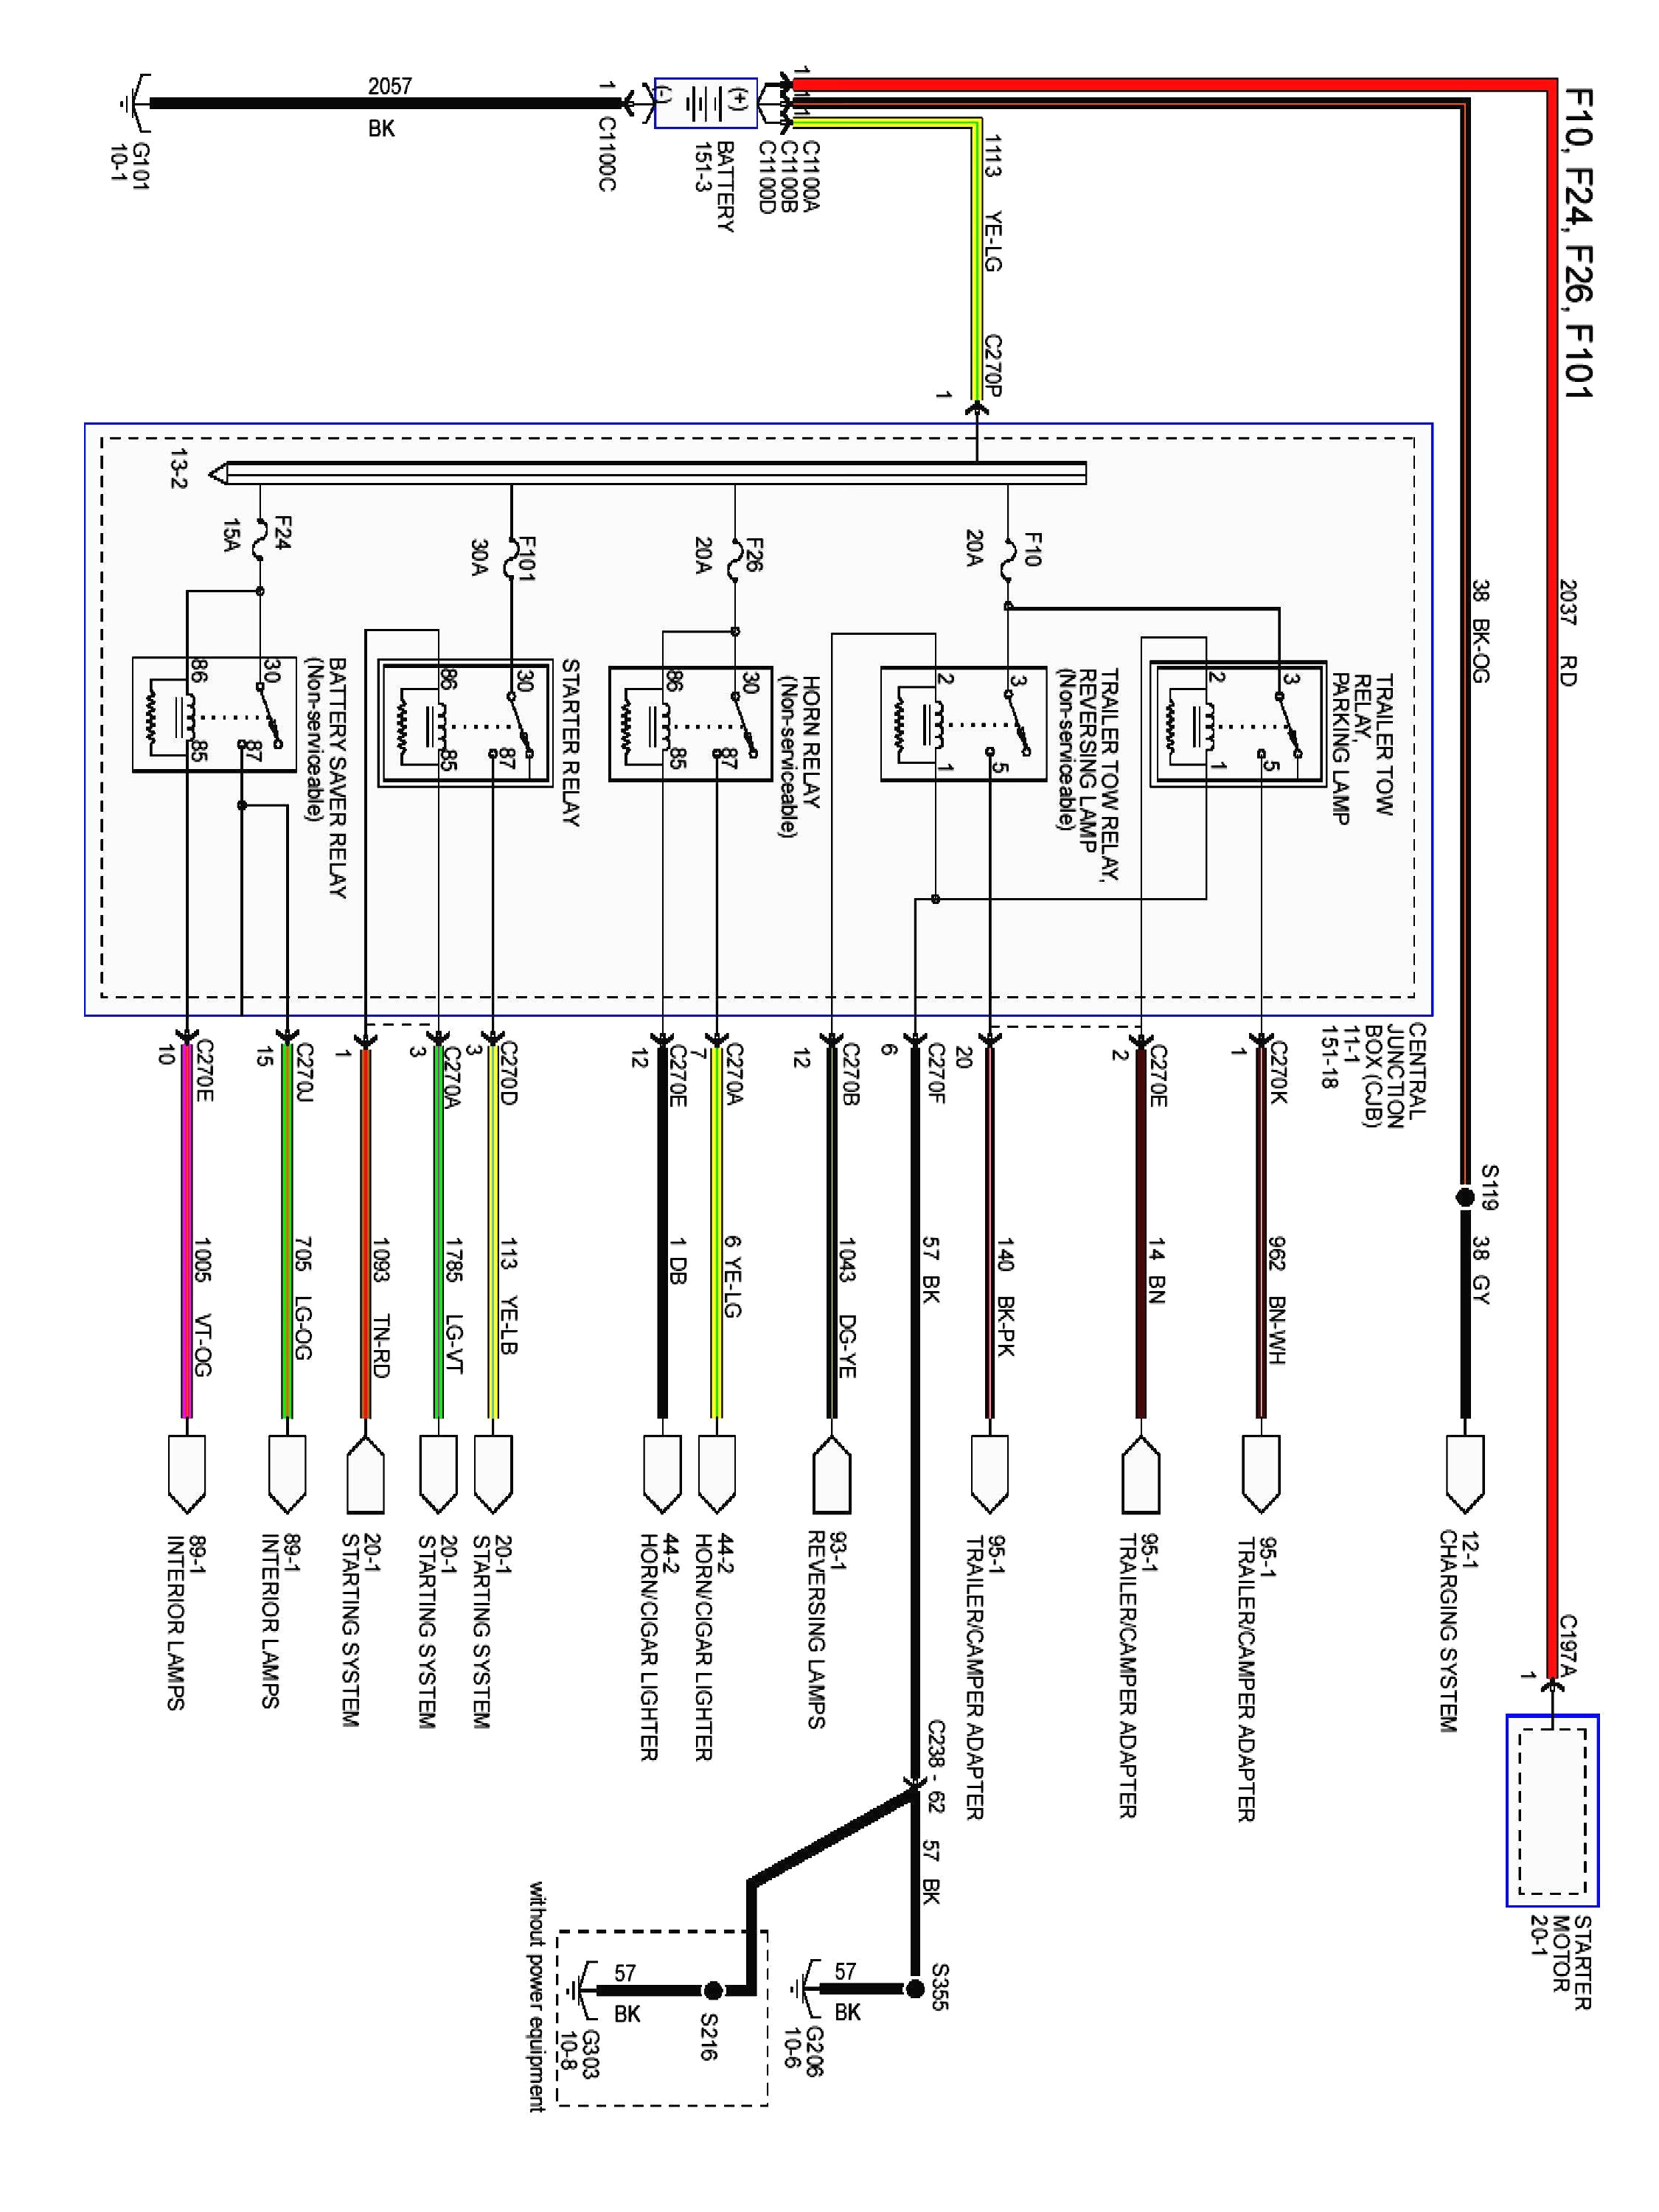 1998 ford f150 trailer wiring diagram simple 2000 ford f150 radio wiring diagram and 2011 07 20 00 zx2 of 1998 ford f150 trailer wiring diagram jpg